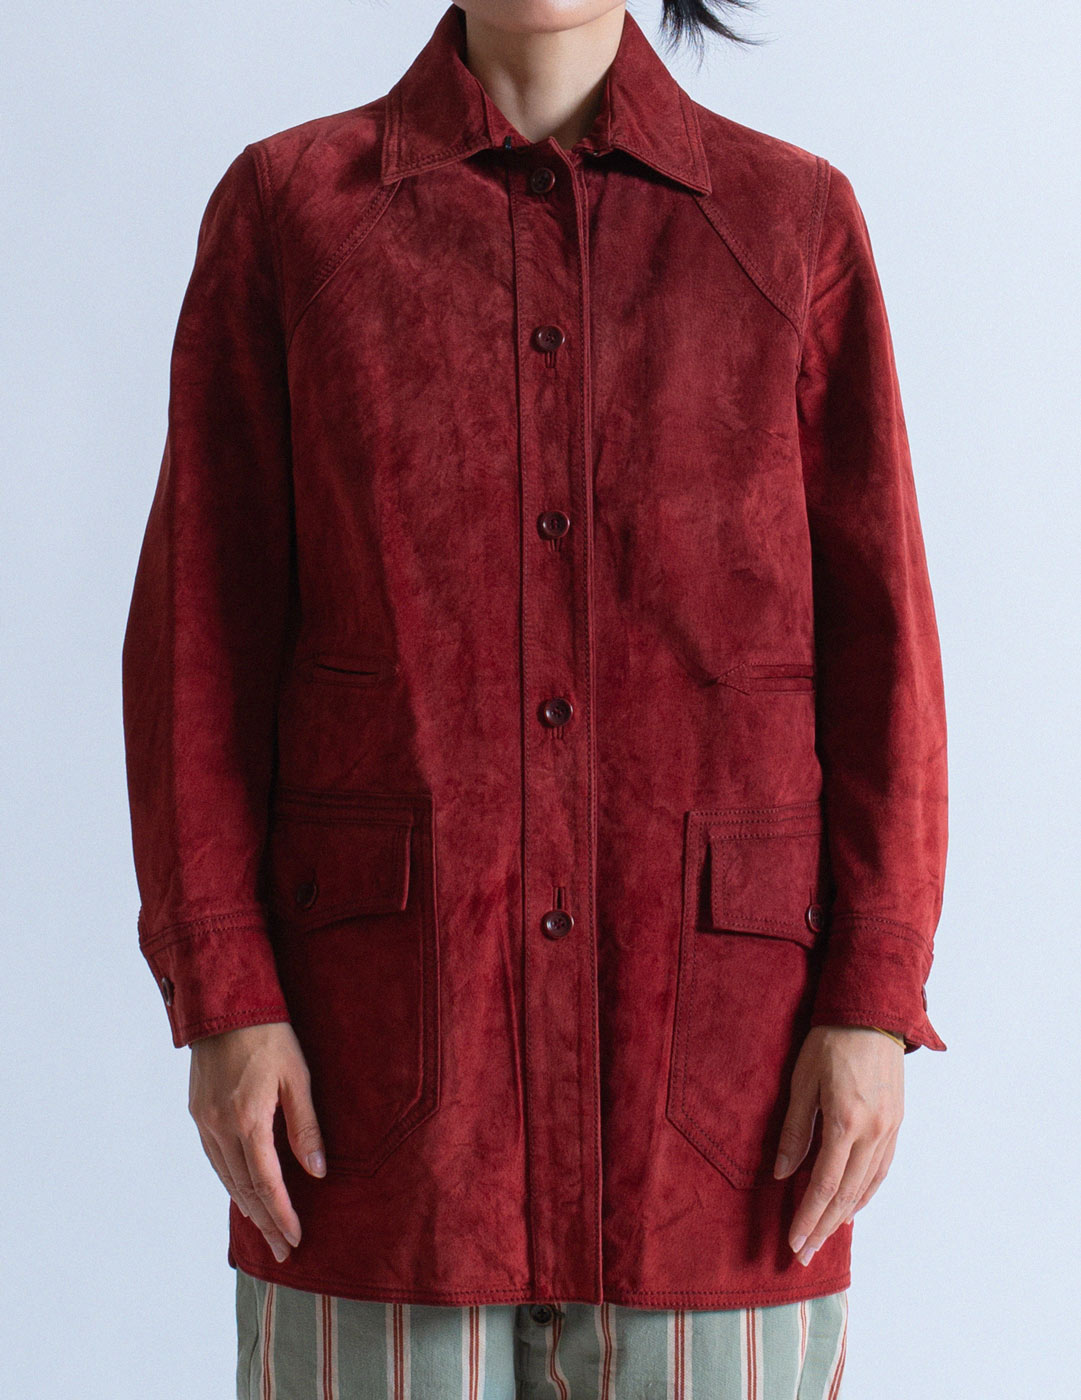 Loewe vintage brick red suede leather jacket detail